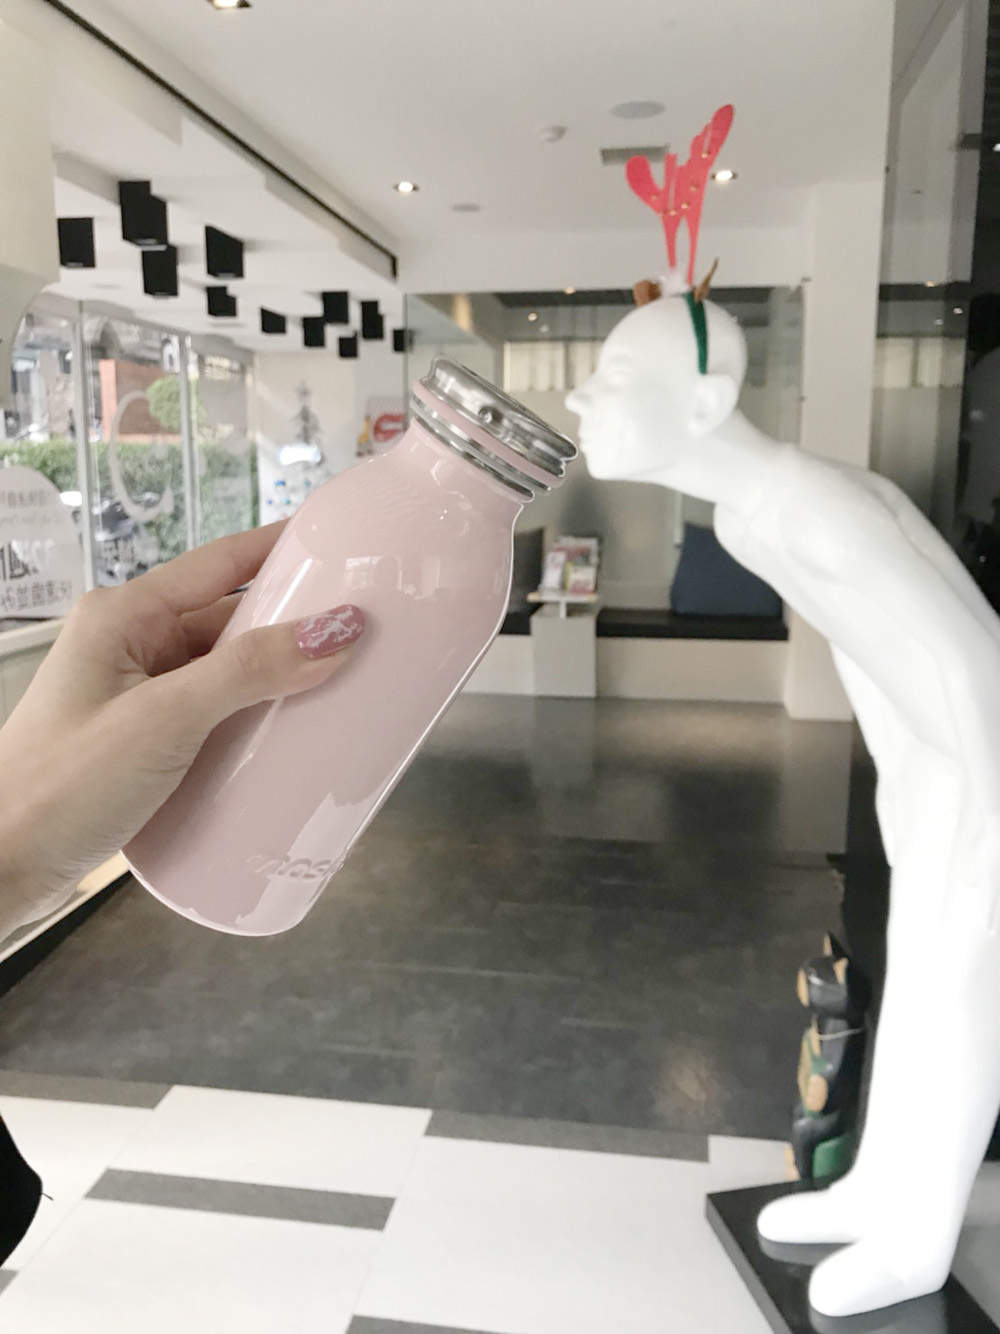 [好物] 瓶子界的網紅!日本兩年熱銷超過80萬個的mosh!牛奶瓶保溫瓶+保溫壺